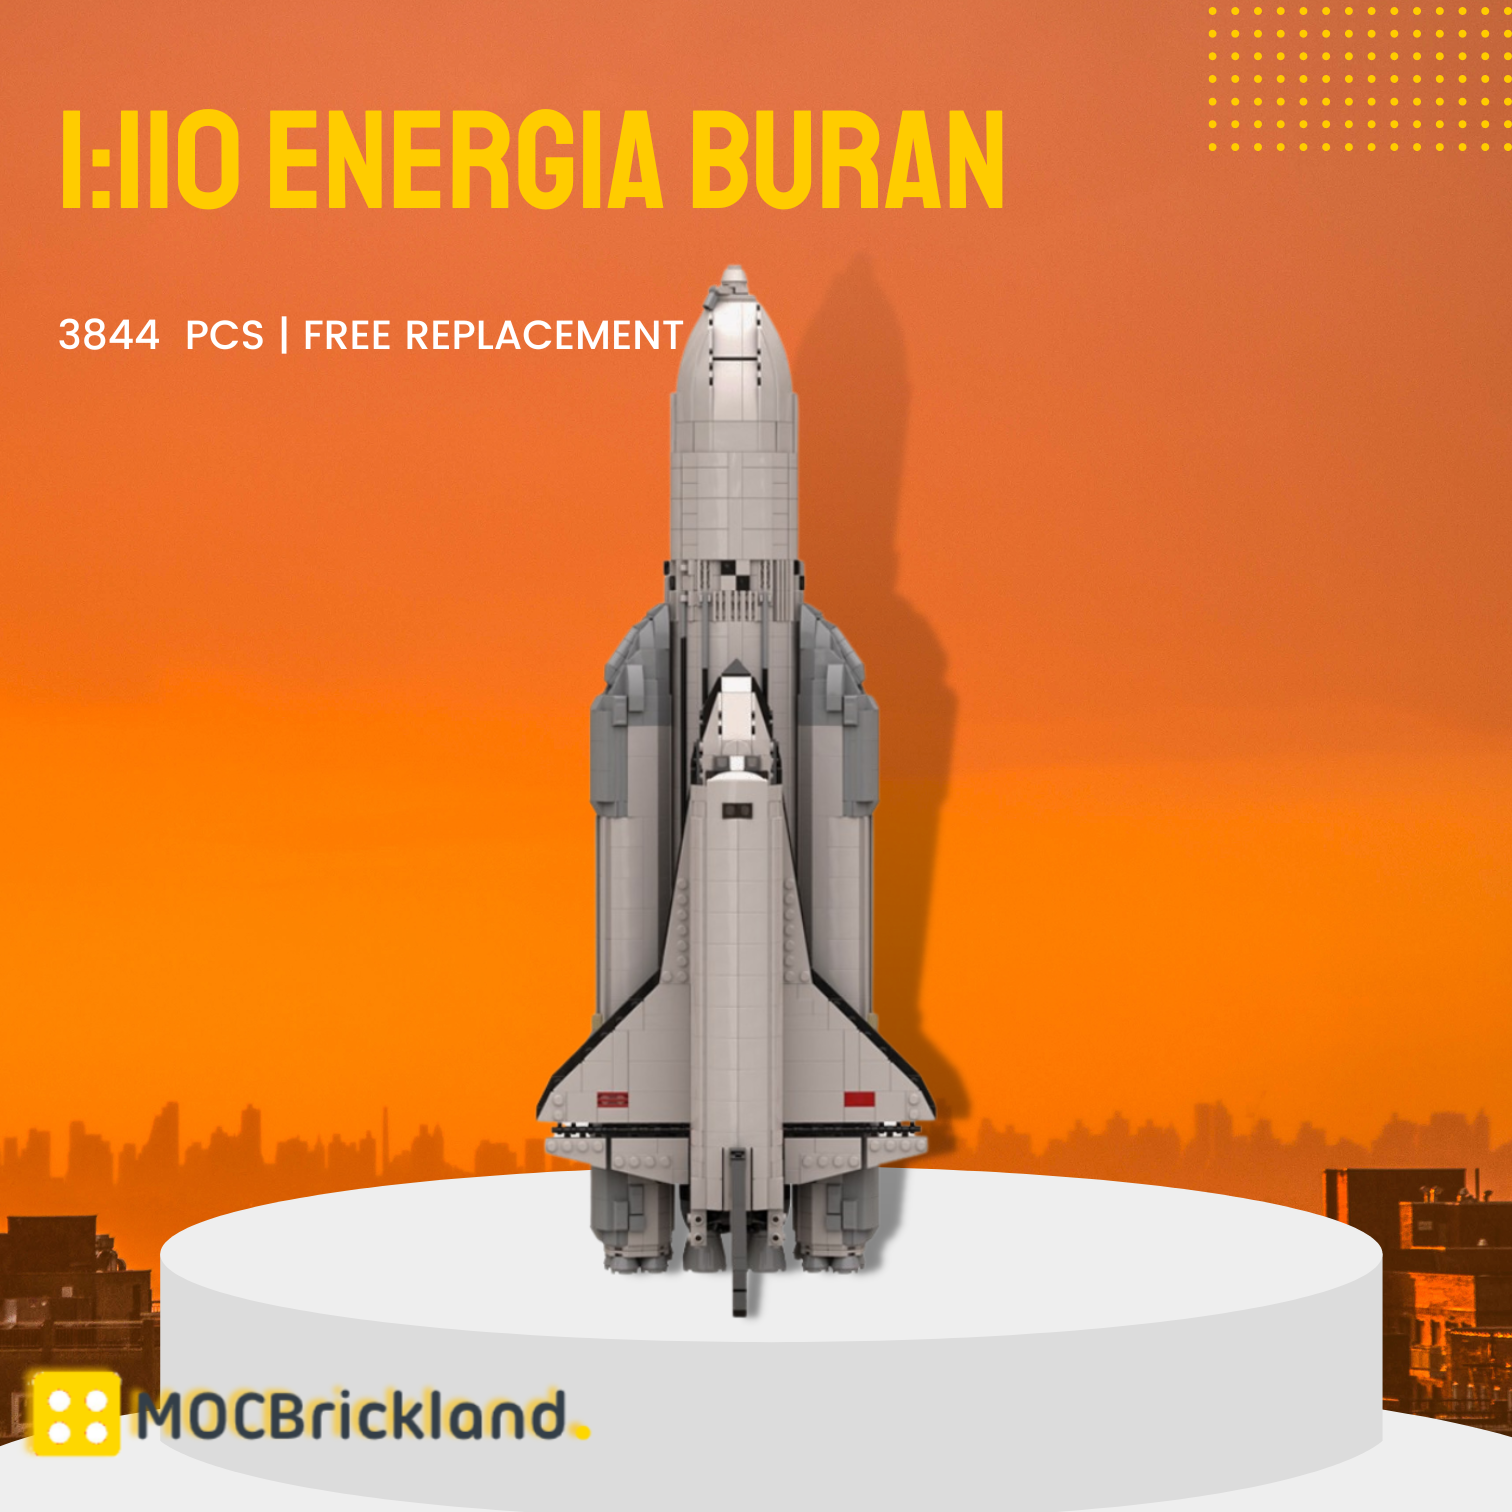 Space MOC-91433 1:110 Energia Buran MOCBRICKLAND 